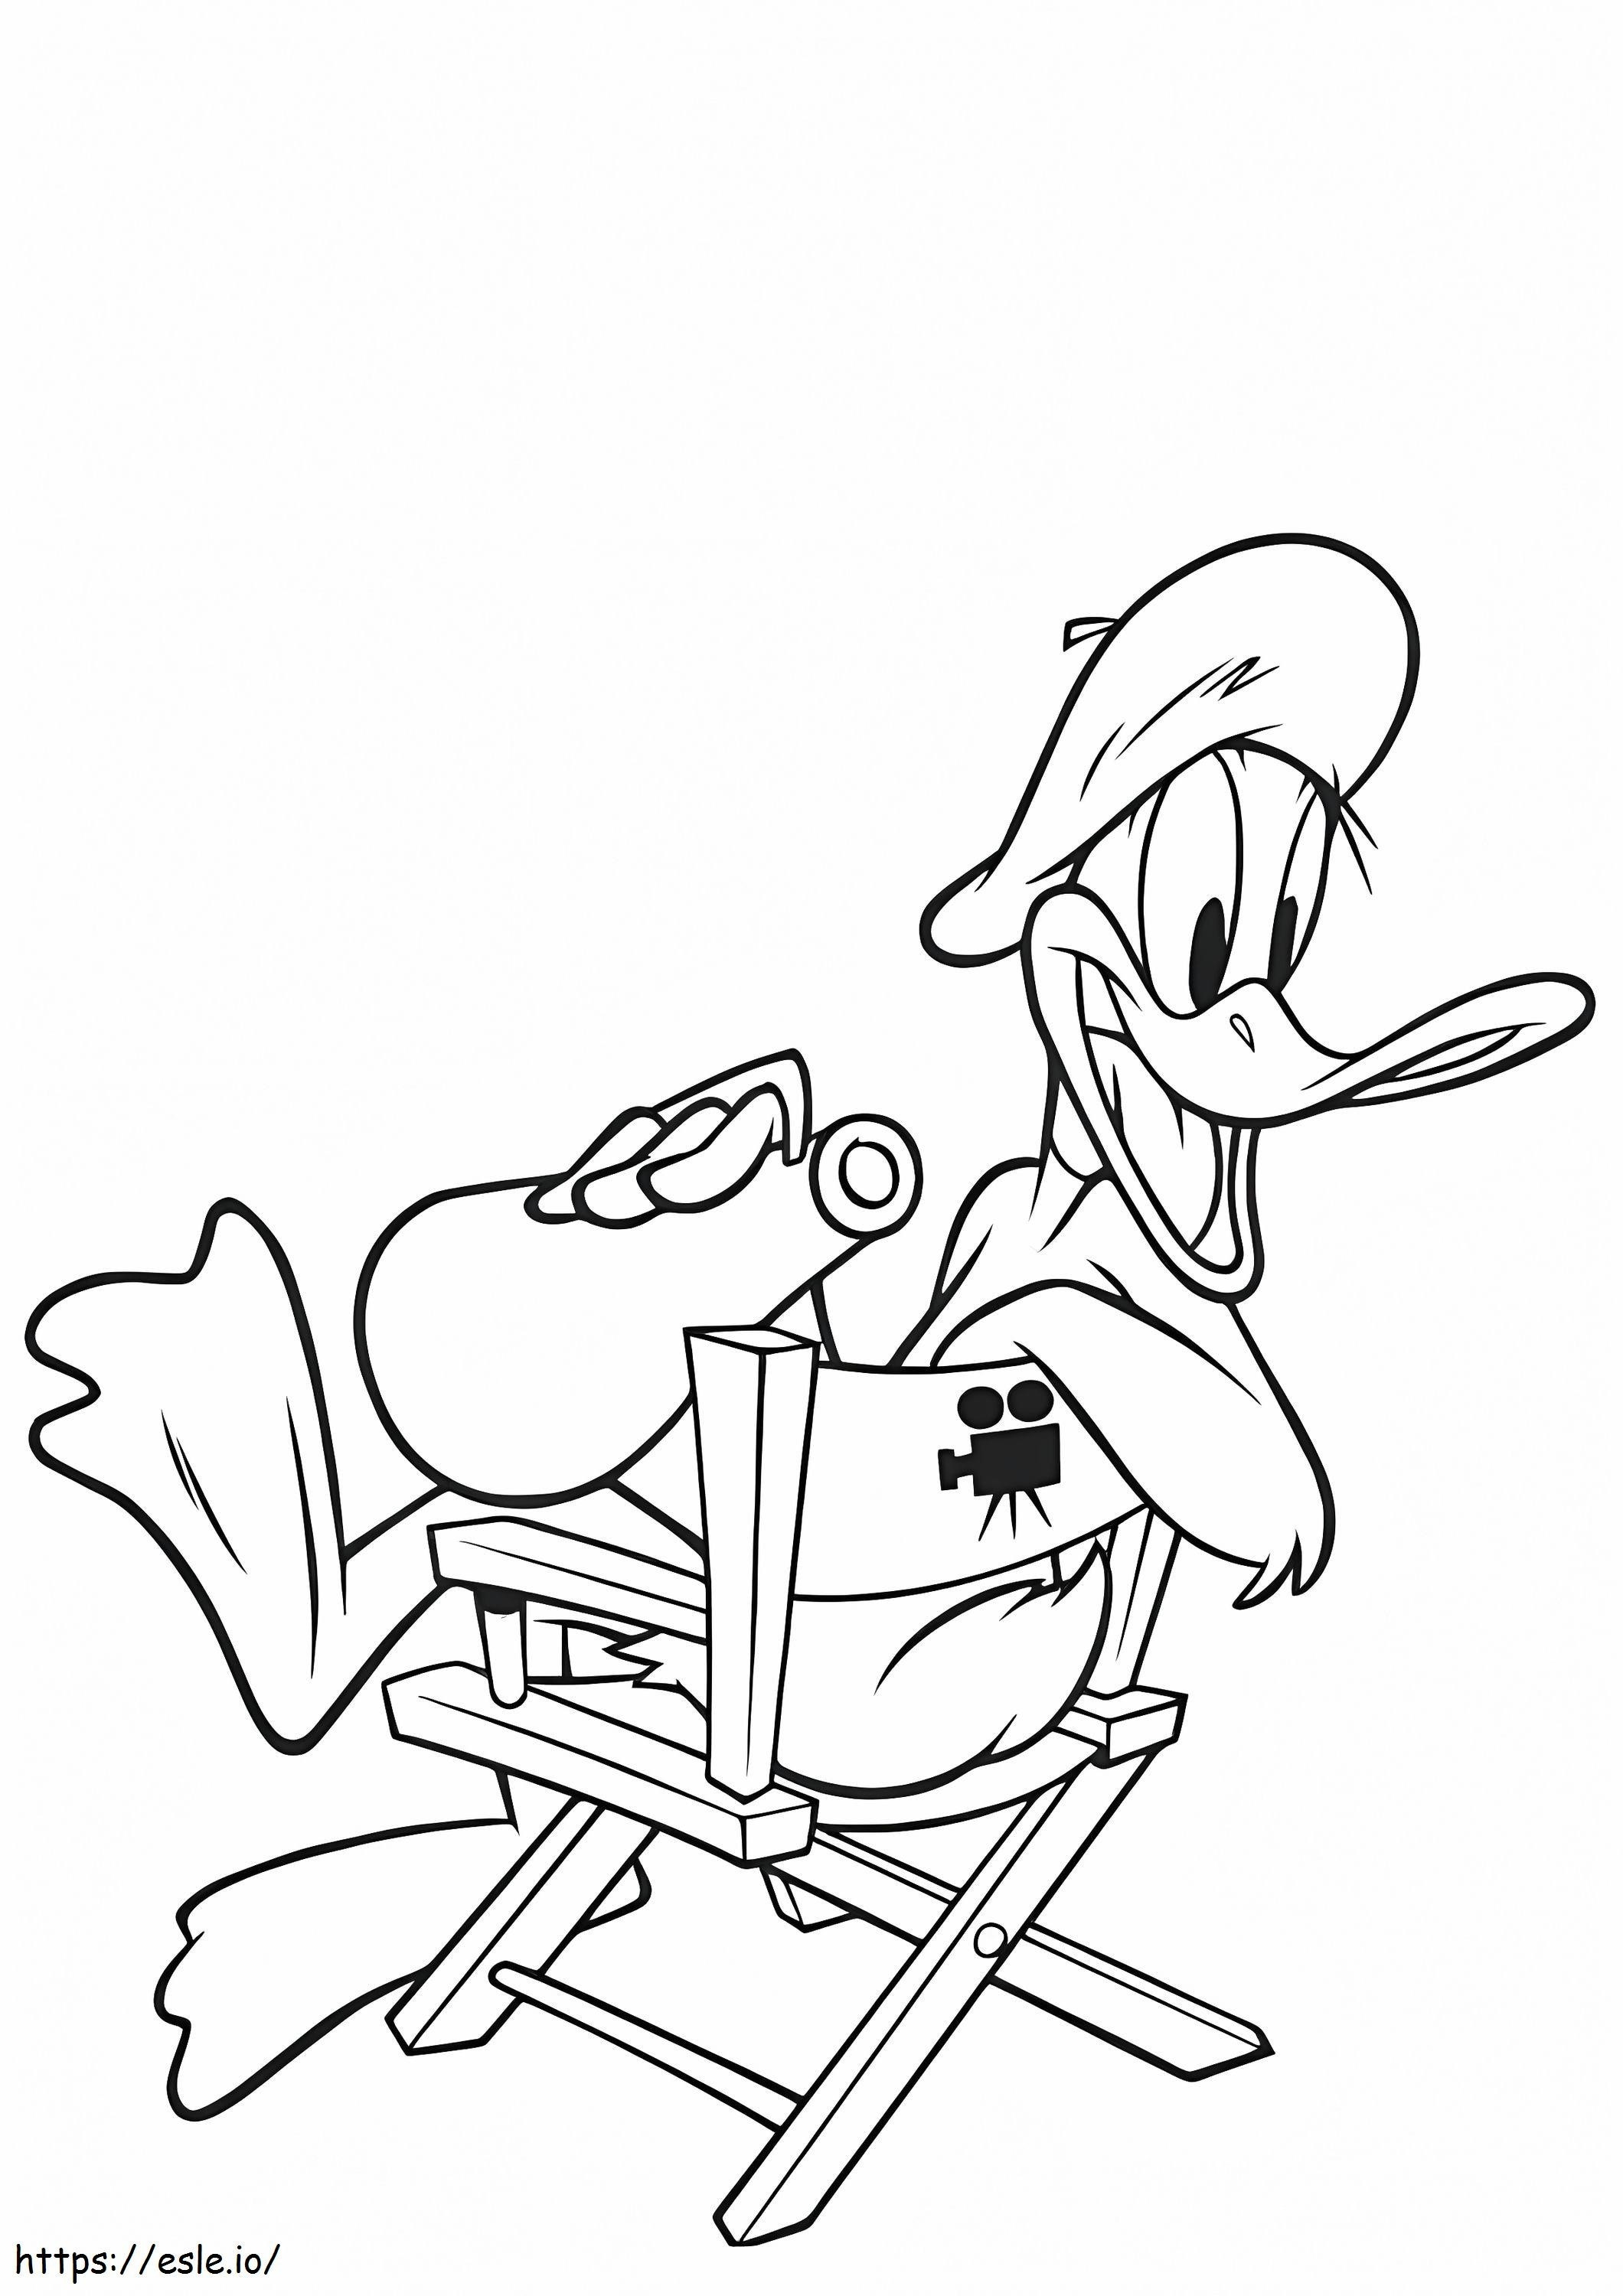 Daffy Duck Seduto Su Una Sedia da colorare